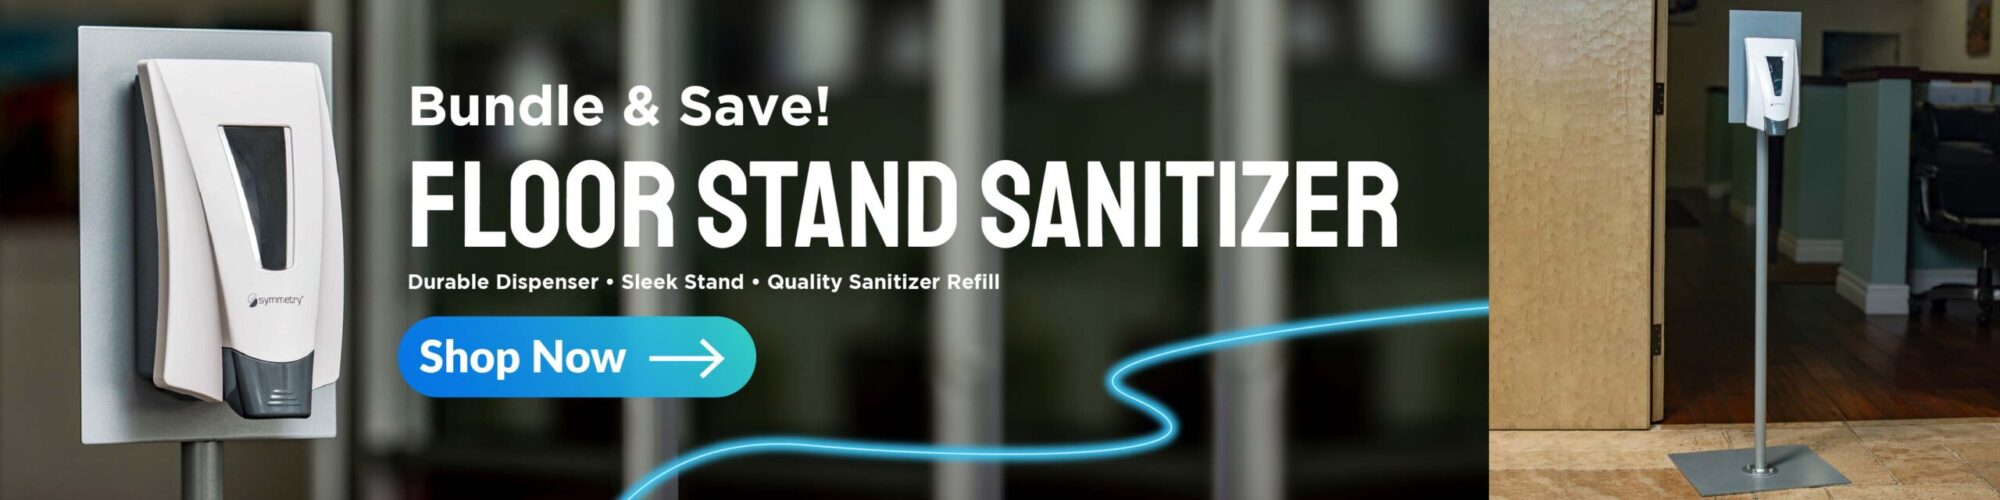 Floor Stand Sanitizer Web Banner